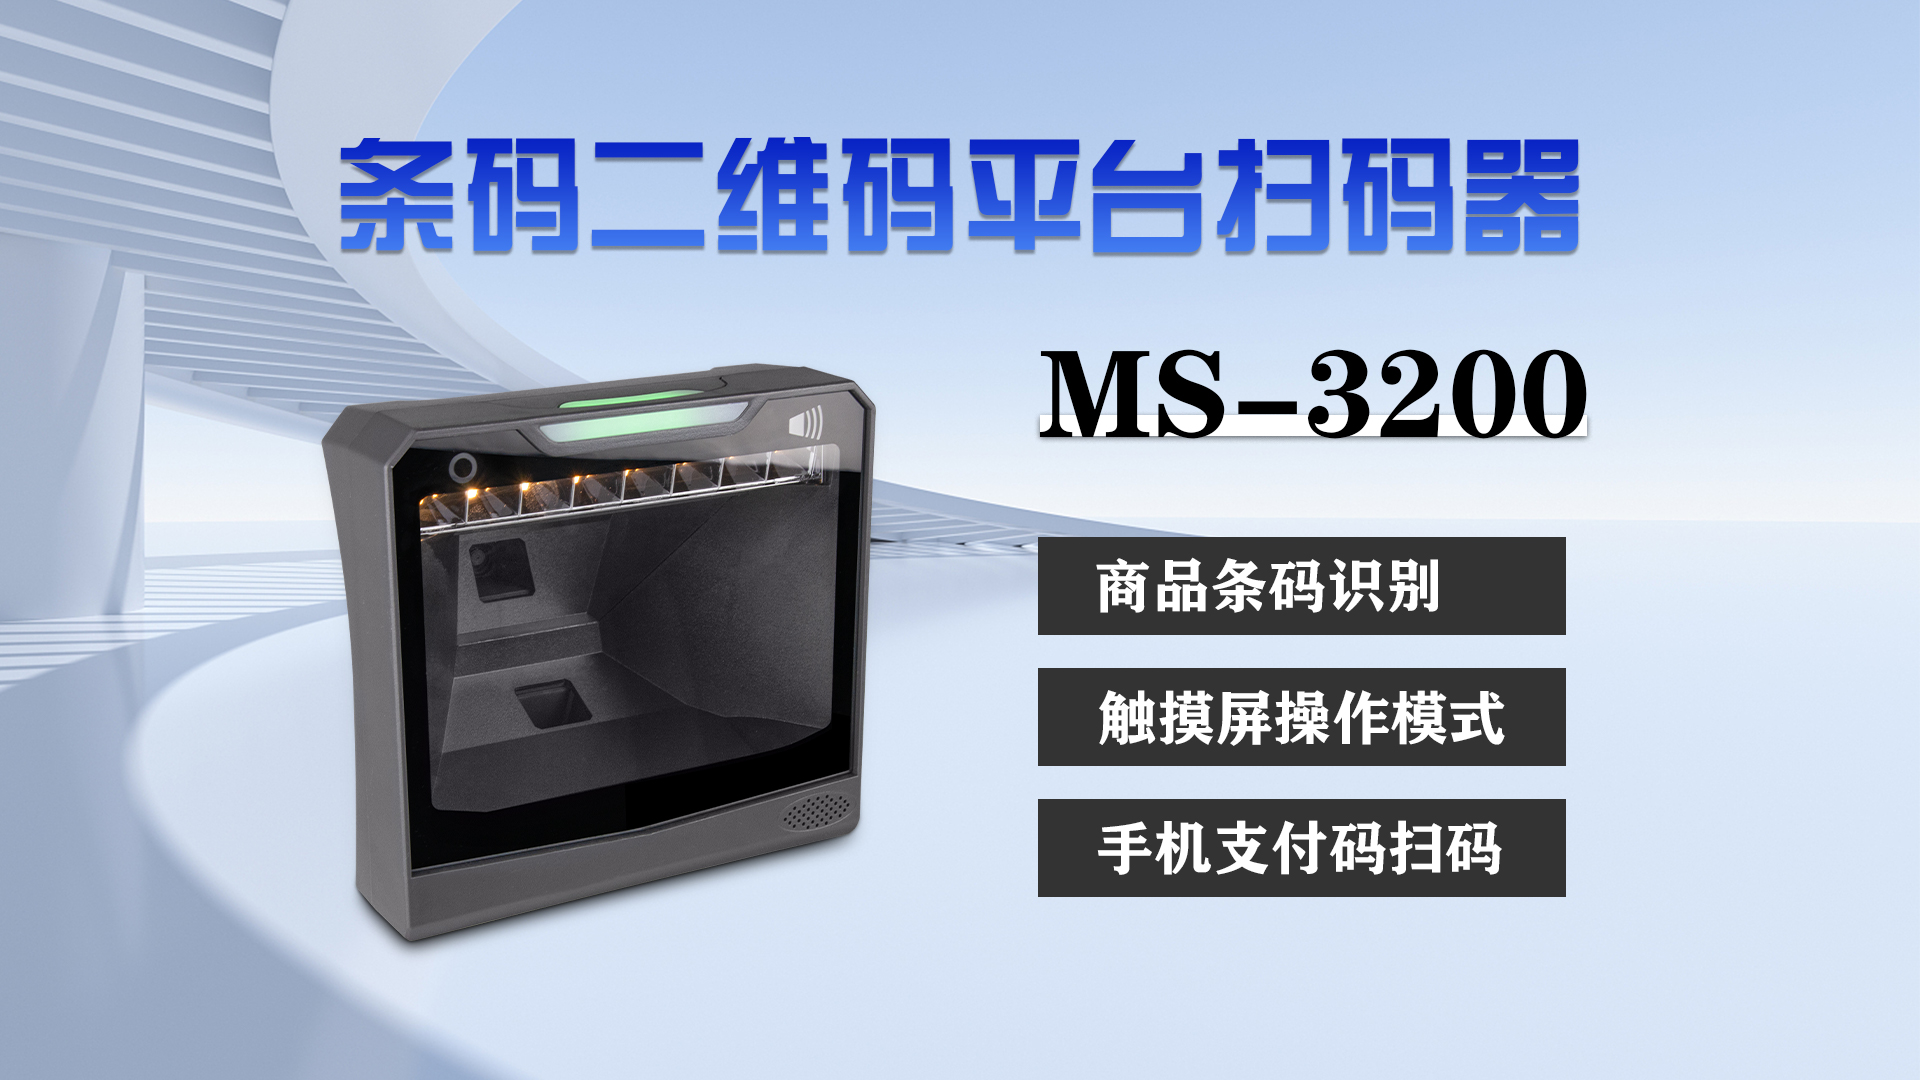 美松桌面式大窗口条码扫描仪MS-3200在自助新零售领域的应用